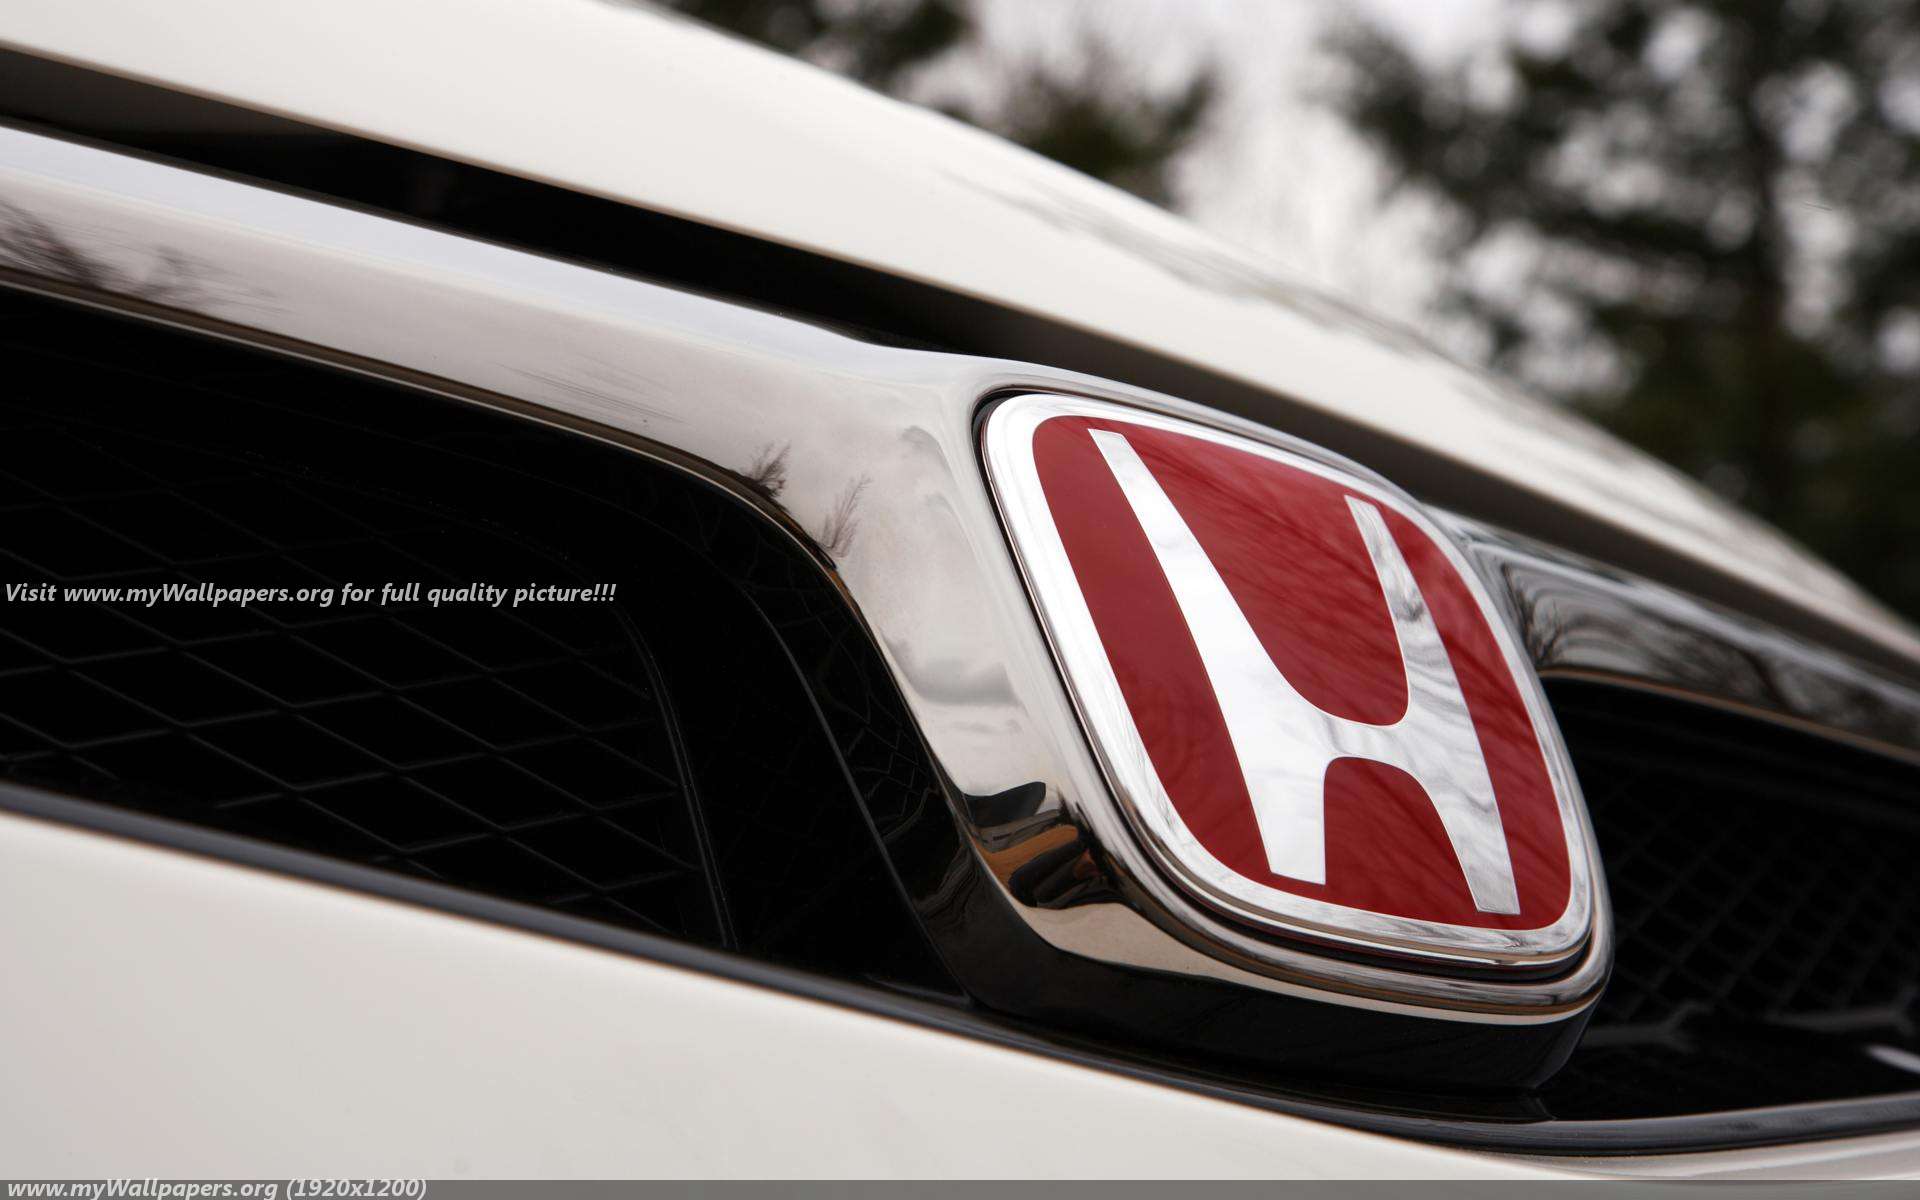 Honda Civic Wallpaper Type R HD